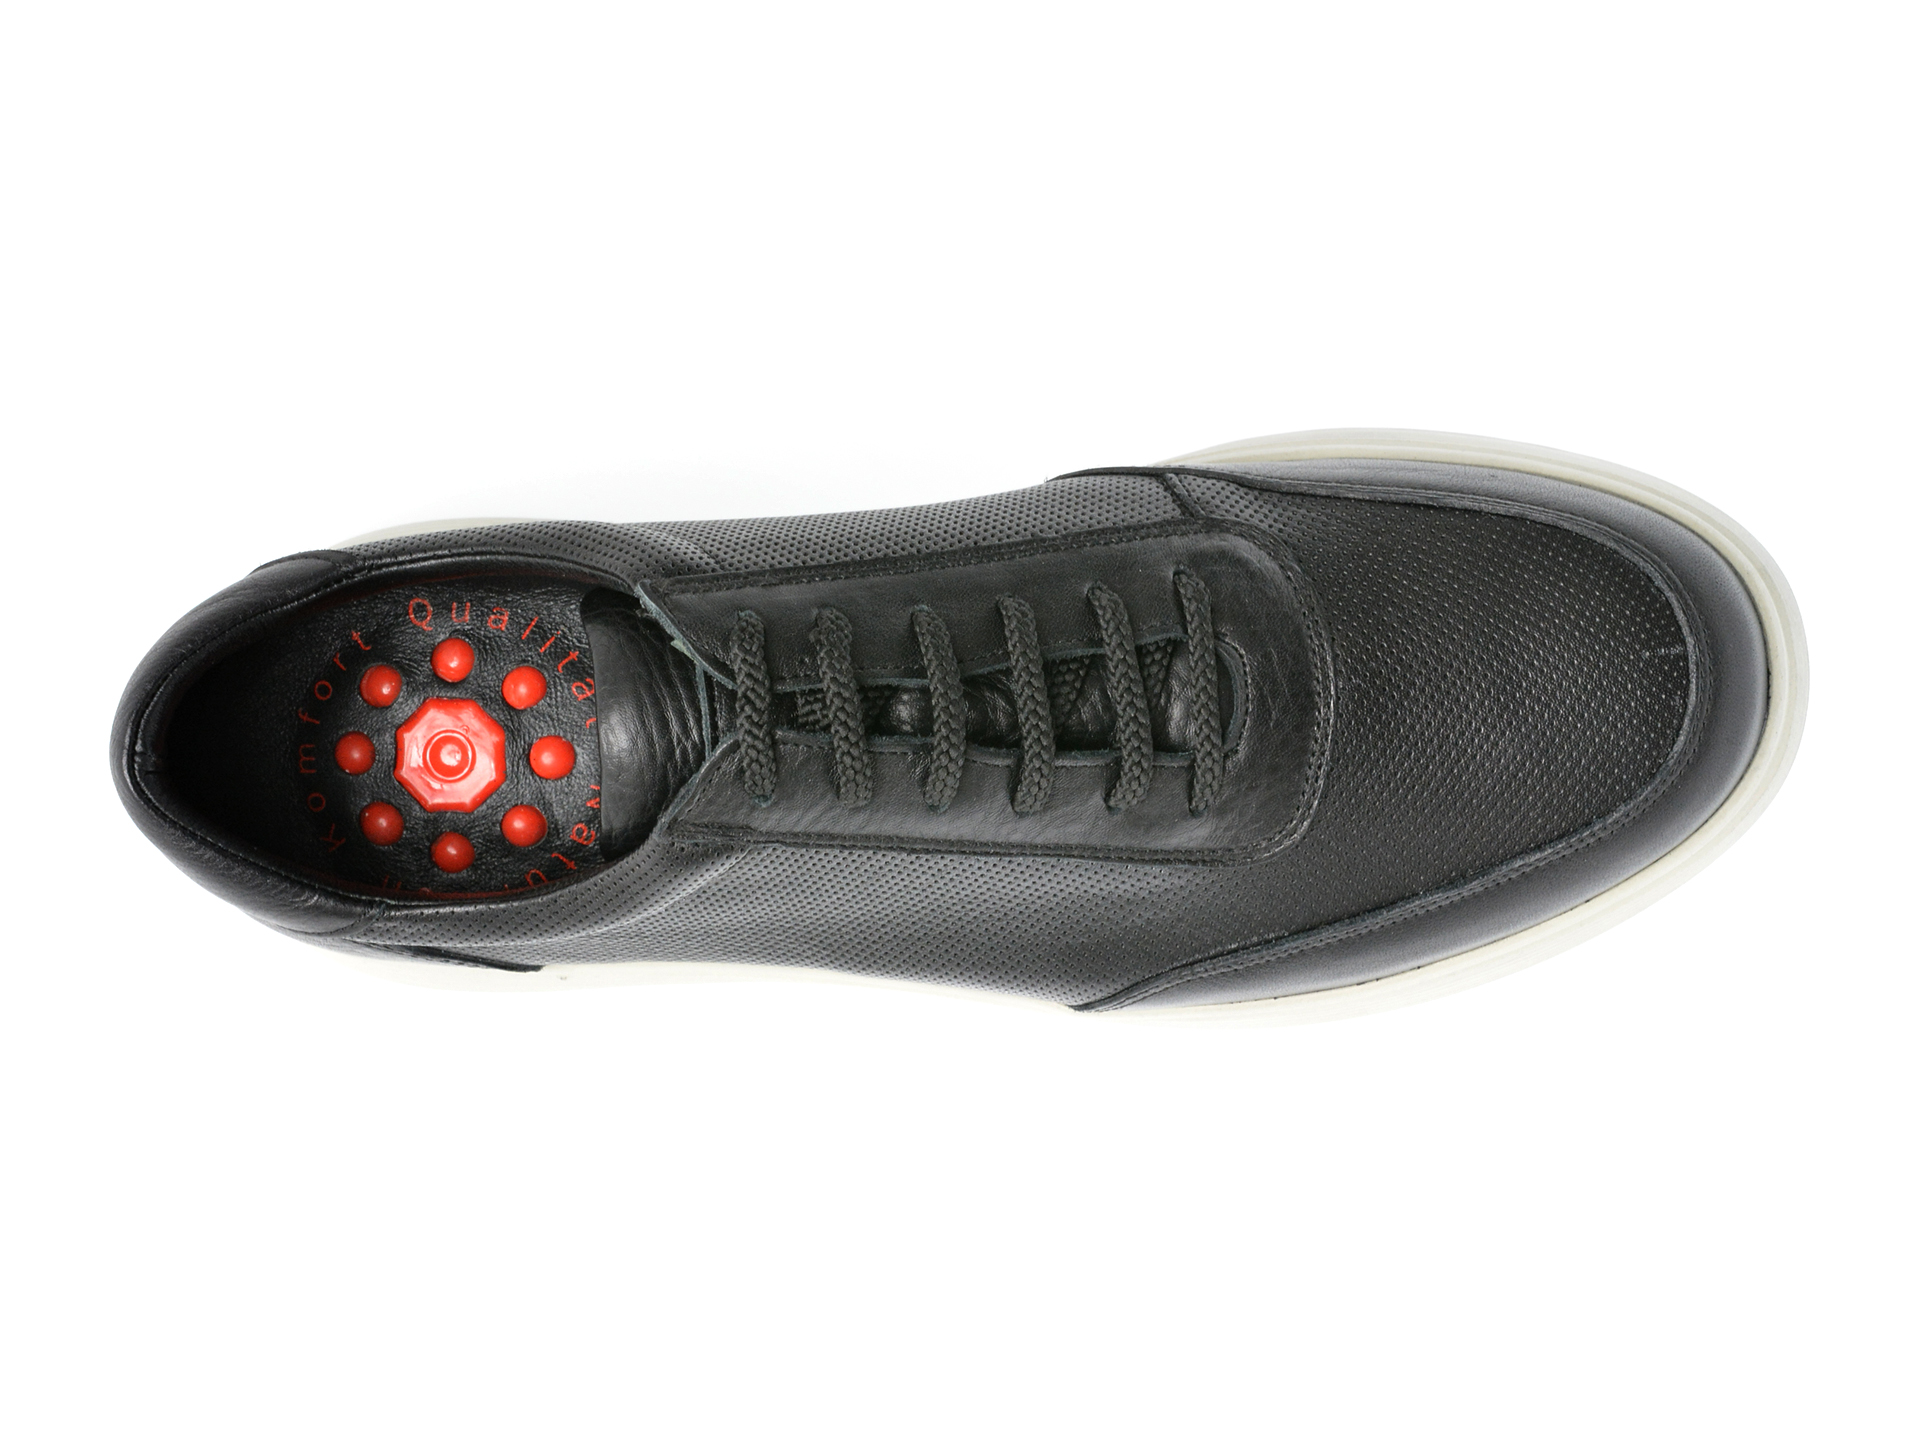 Poze Pantofi OTTER negri, 20510, din piele naturala Tezyo